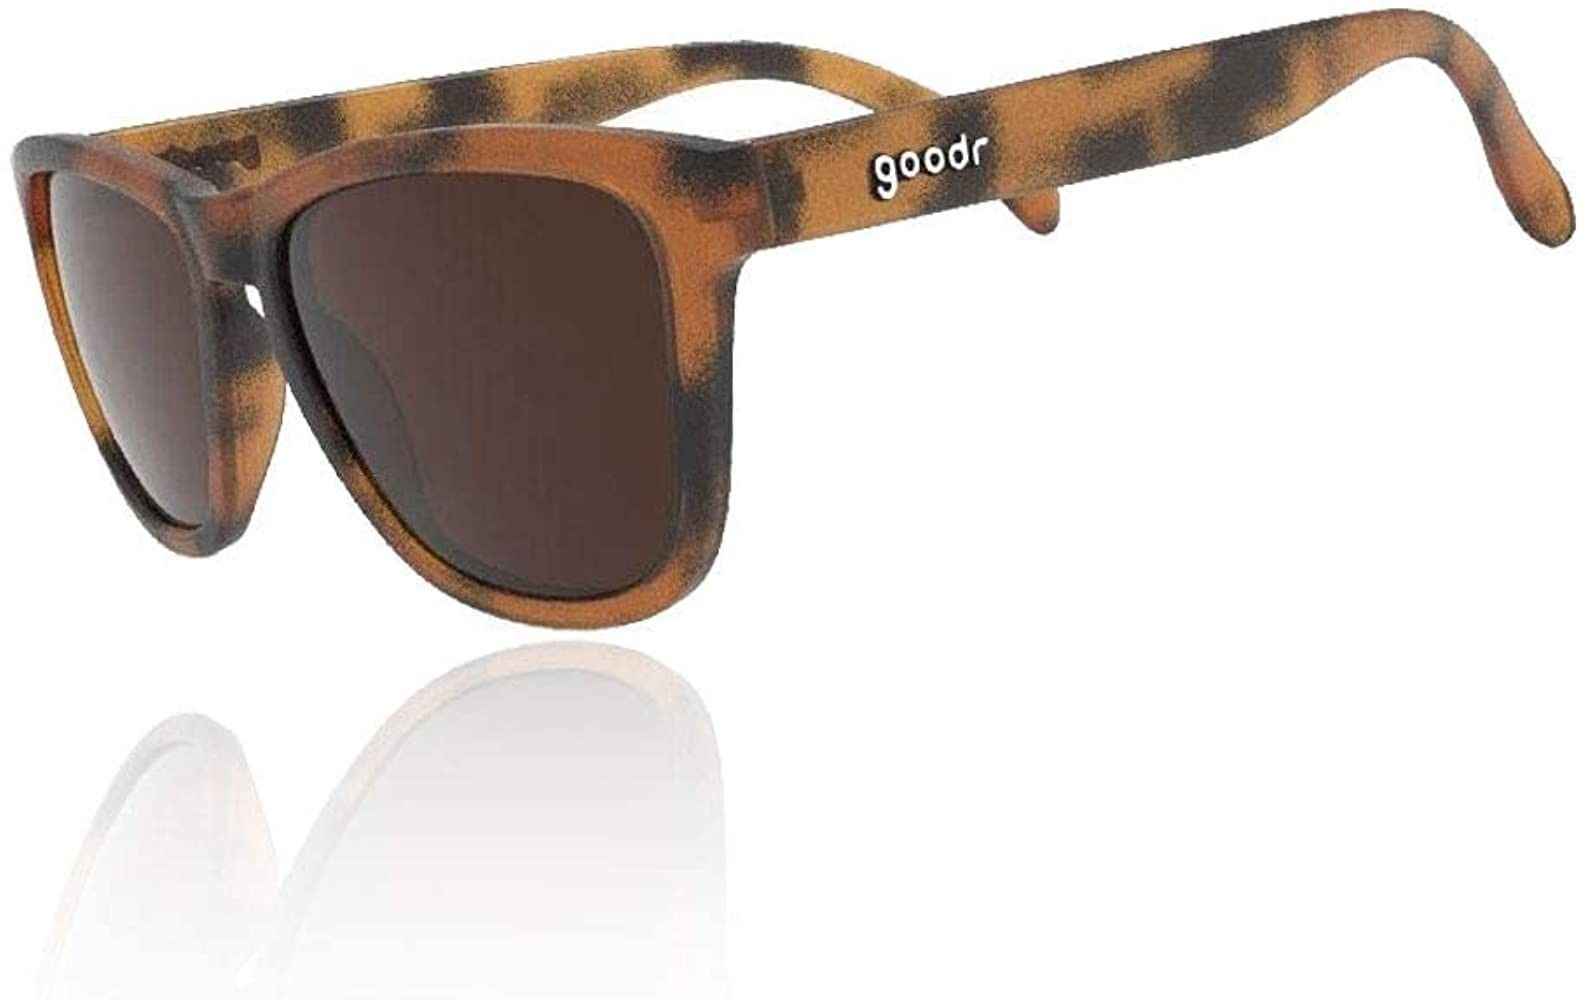 Goodr OG Polarized Sunglasses Bosley's Basset Hound Dreams | Amazon (US)